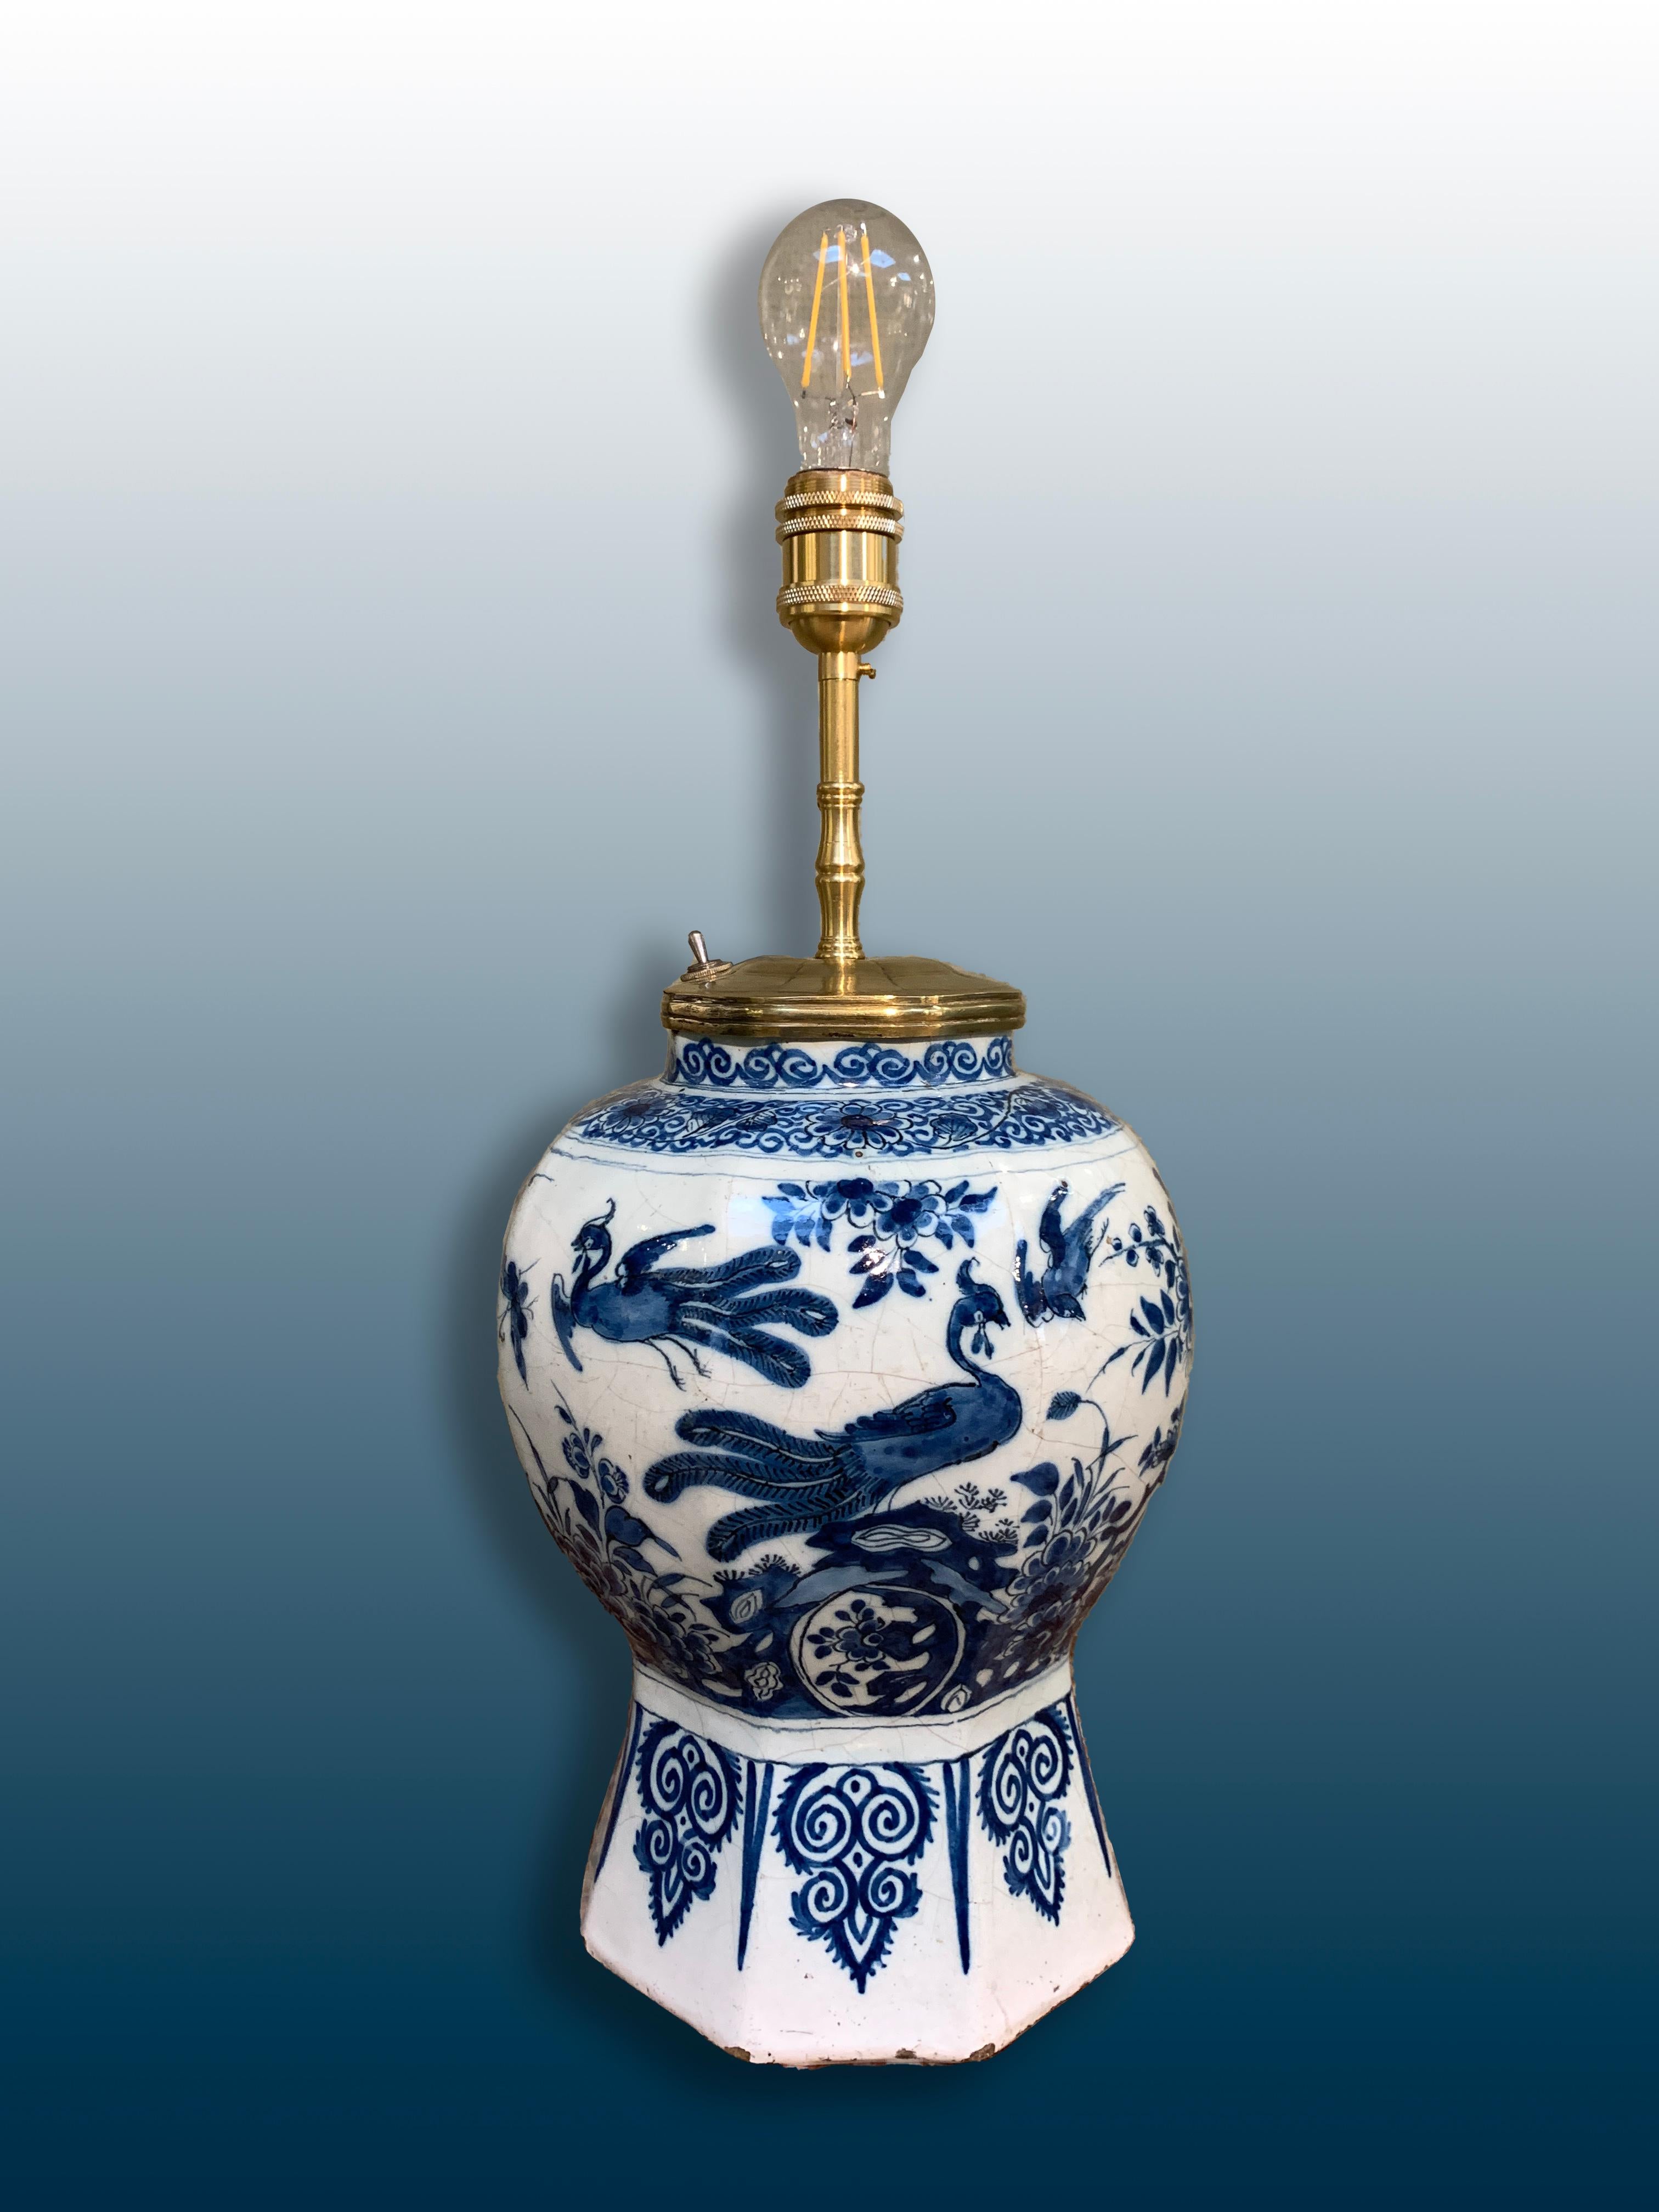 Eine schöne frühe holländische Delfter Vase mit Chinoiserie-Dekor, die in eine Lampe umgewandelt wurde.

Ursprünglich: Delft, die Niederlande
Datum: um 1720
Werkstatt: Unbekannt.

Diese niederländische Delfter Lampe aus dem 18. Jahrhundert ist